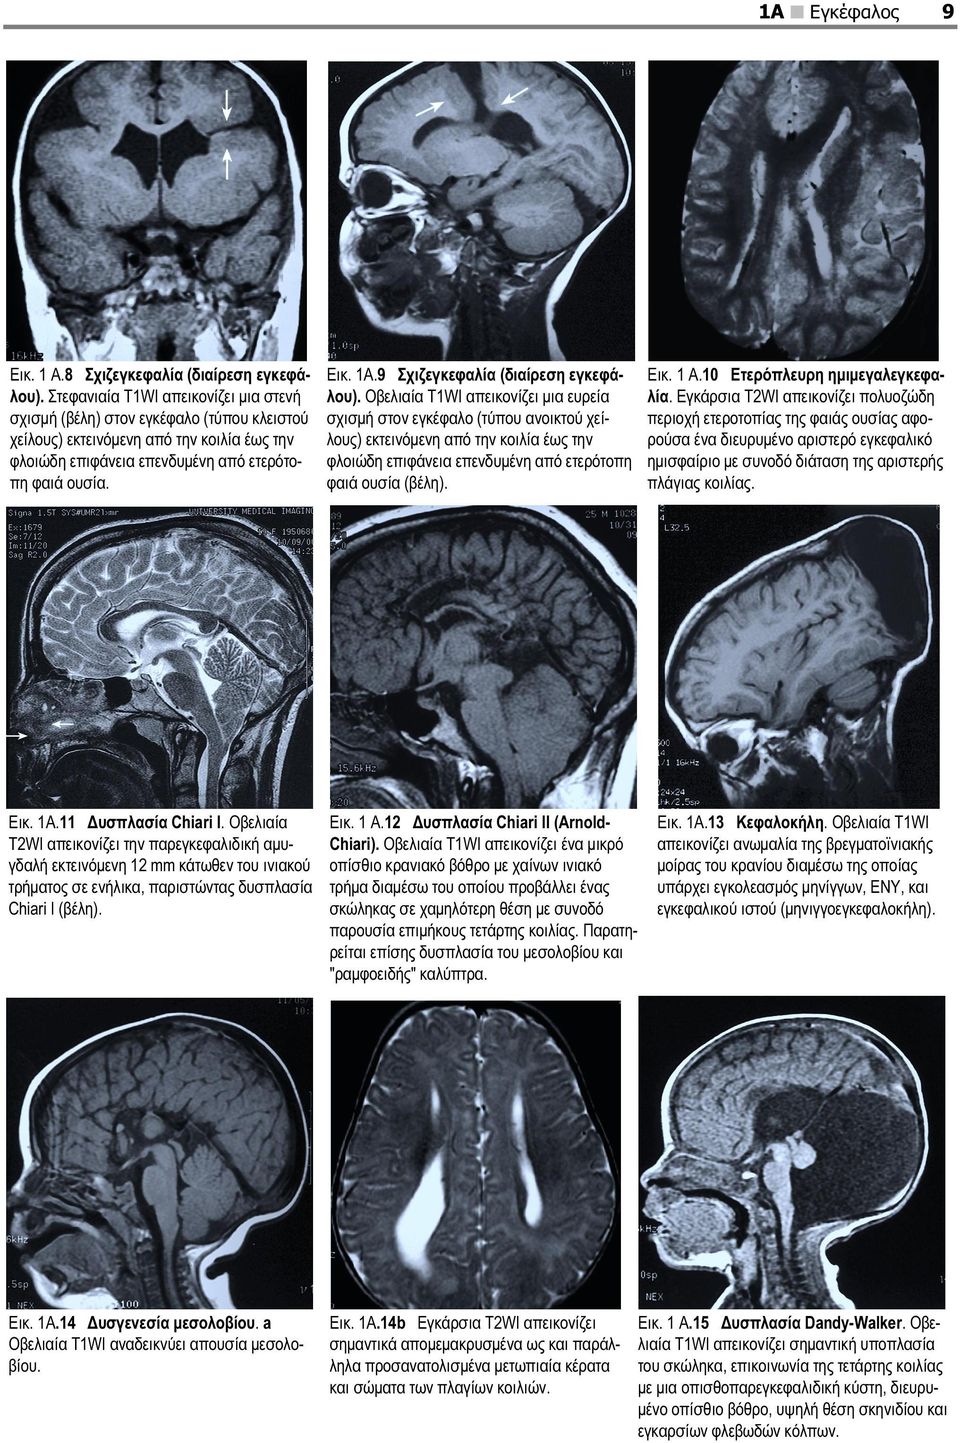 9 Σχιζεγκεφαλία (διαίρεση εγκεφάλου).